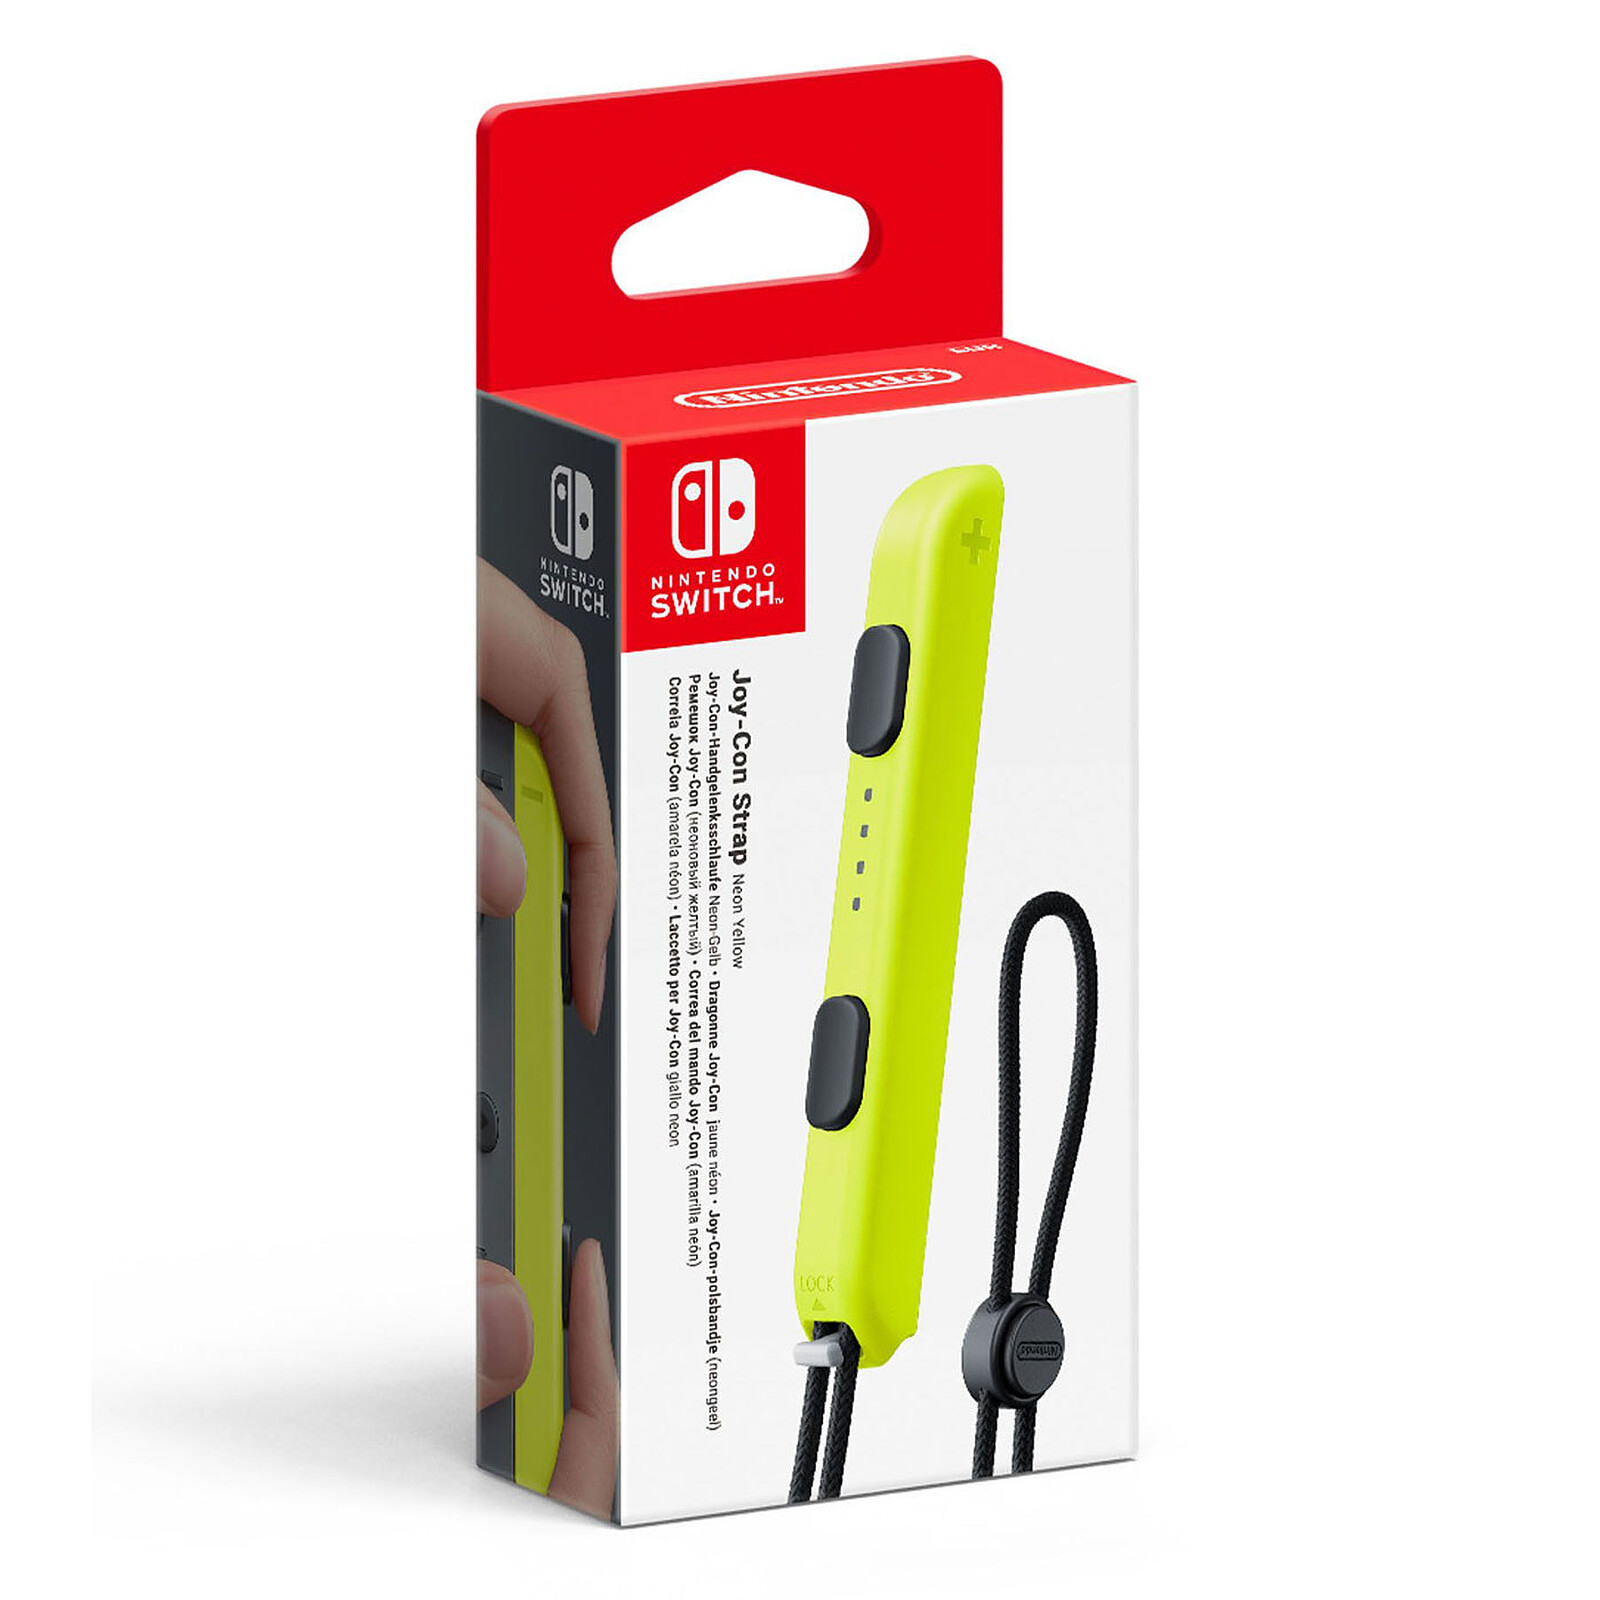 Mando Joy-Con Azul/Amarillo para Nintendo Switch